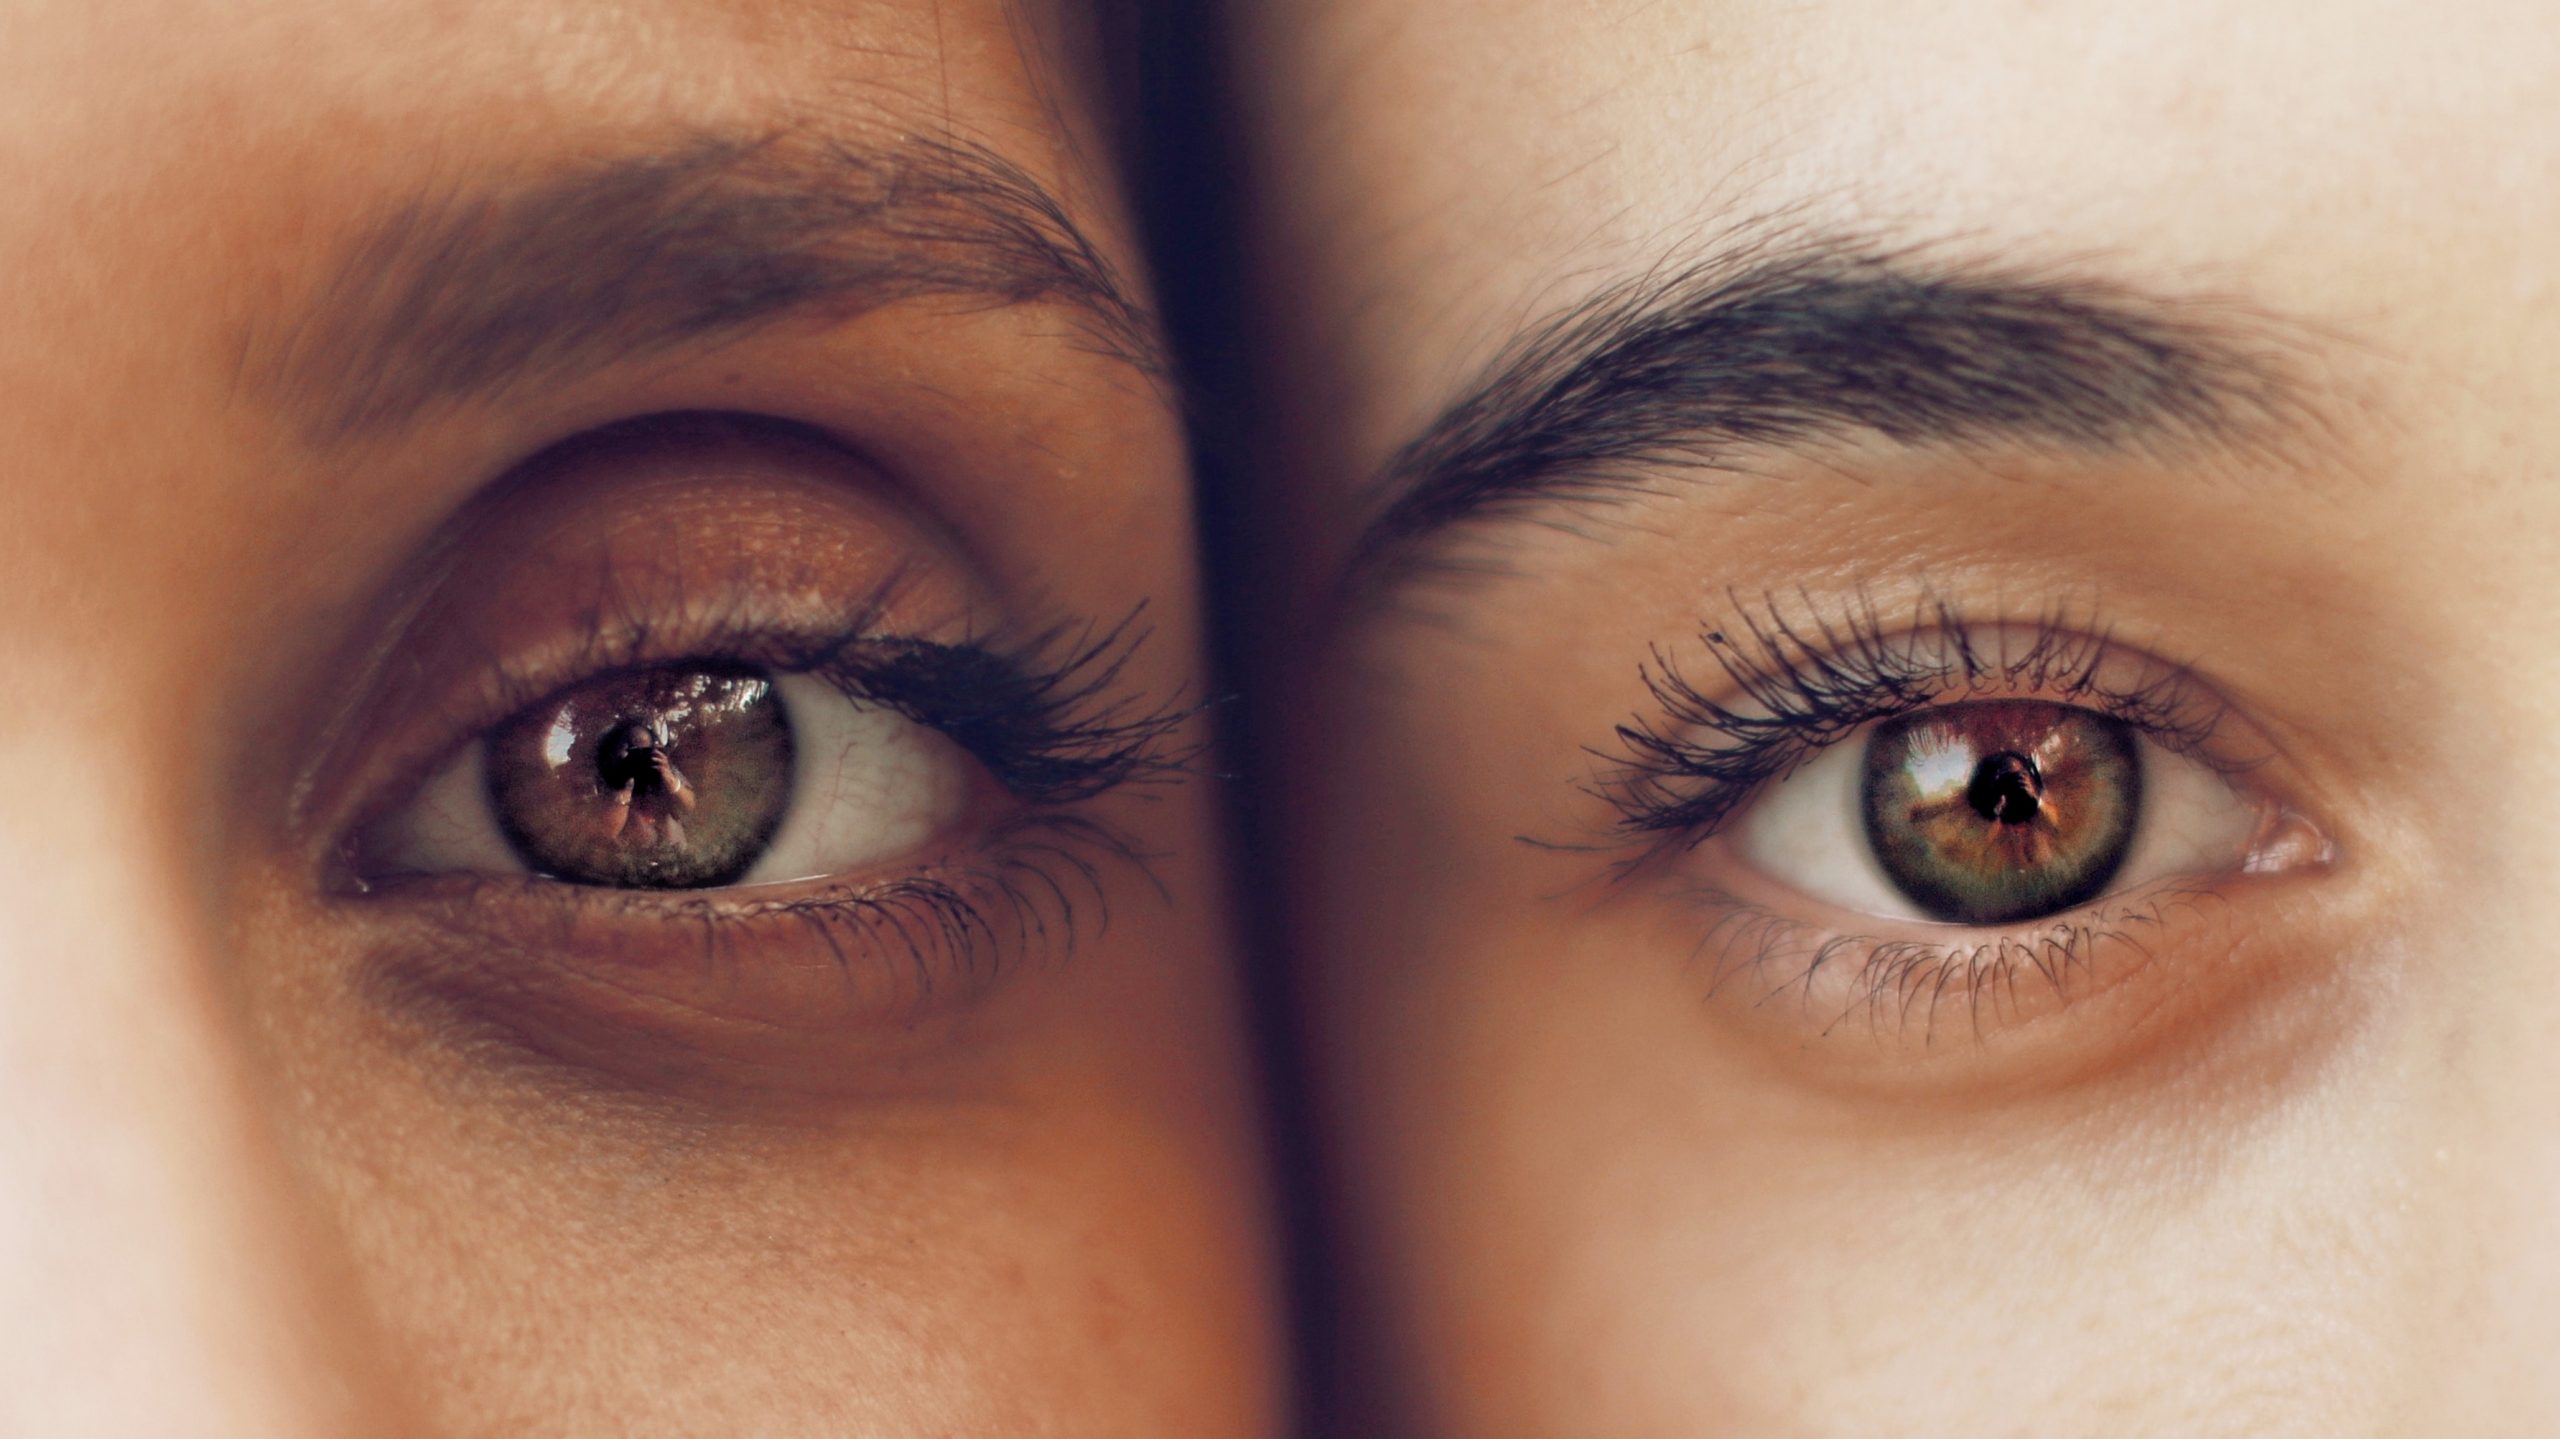 Calázio no olho: o que é, sintomas, causas e tratamento - Tua Saúde